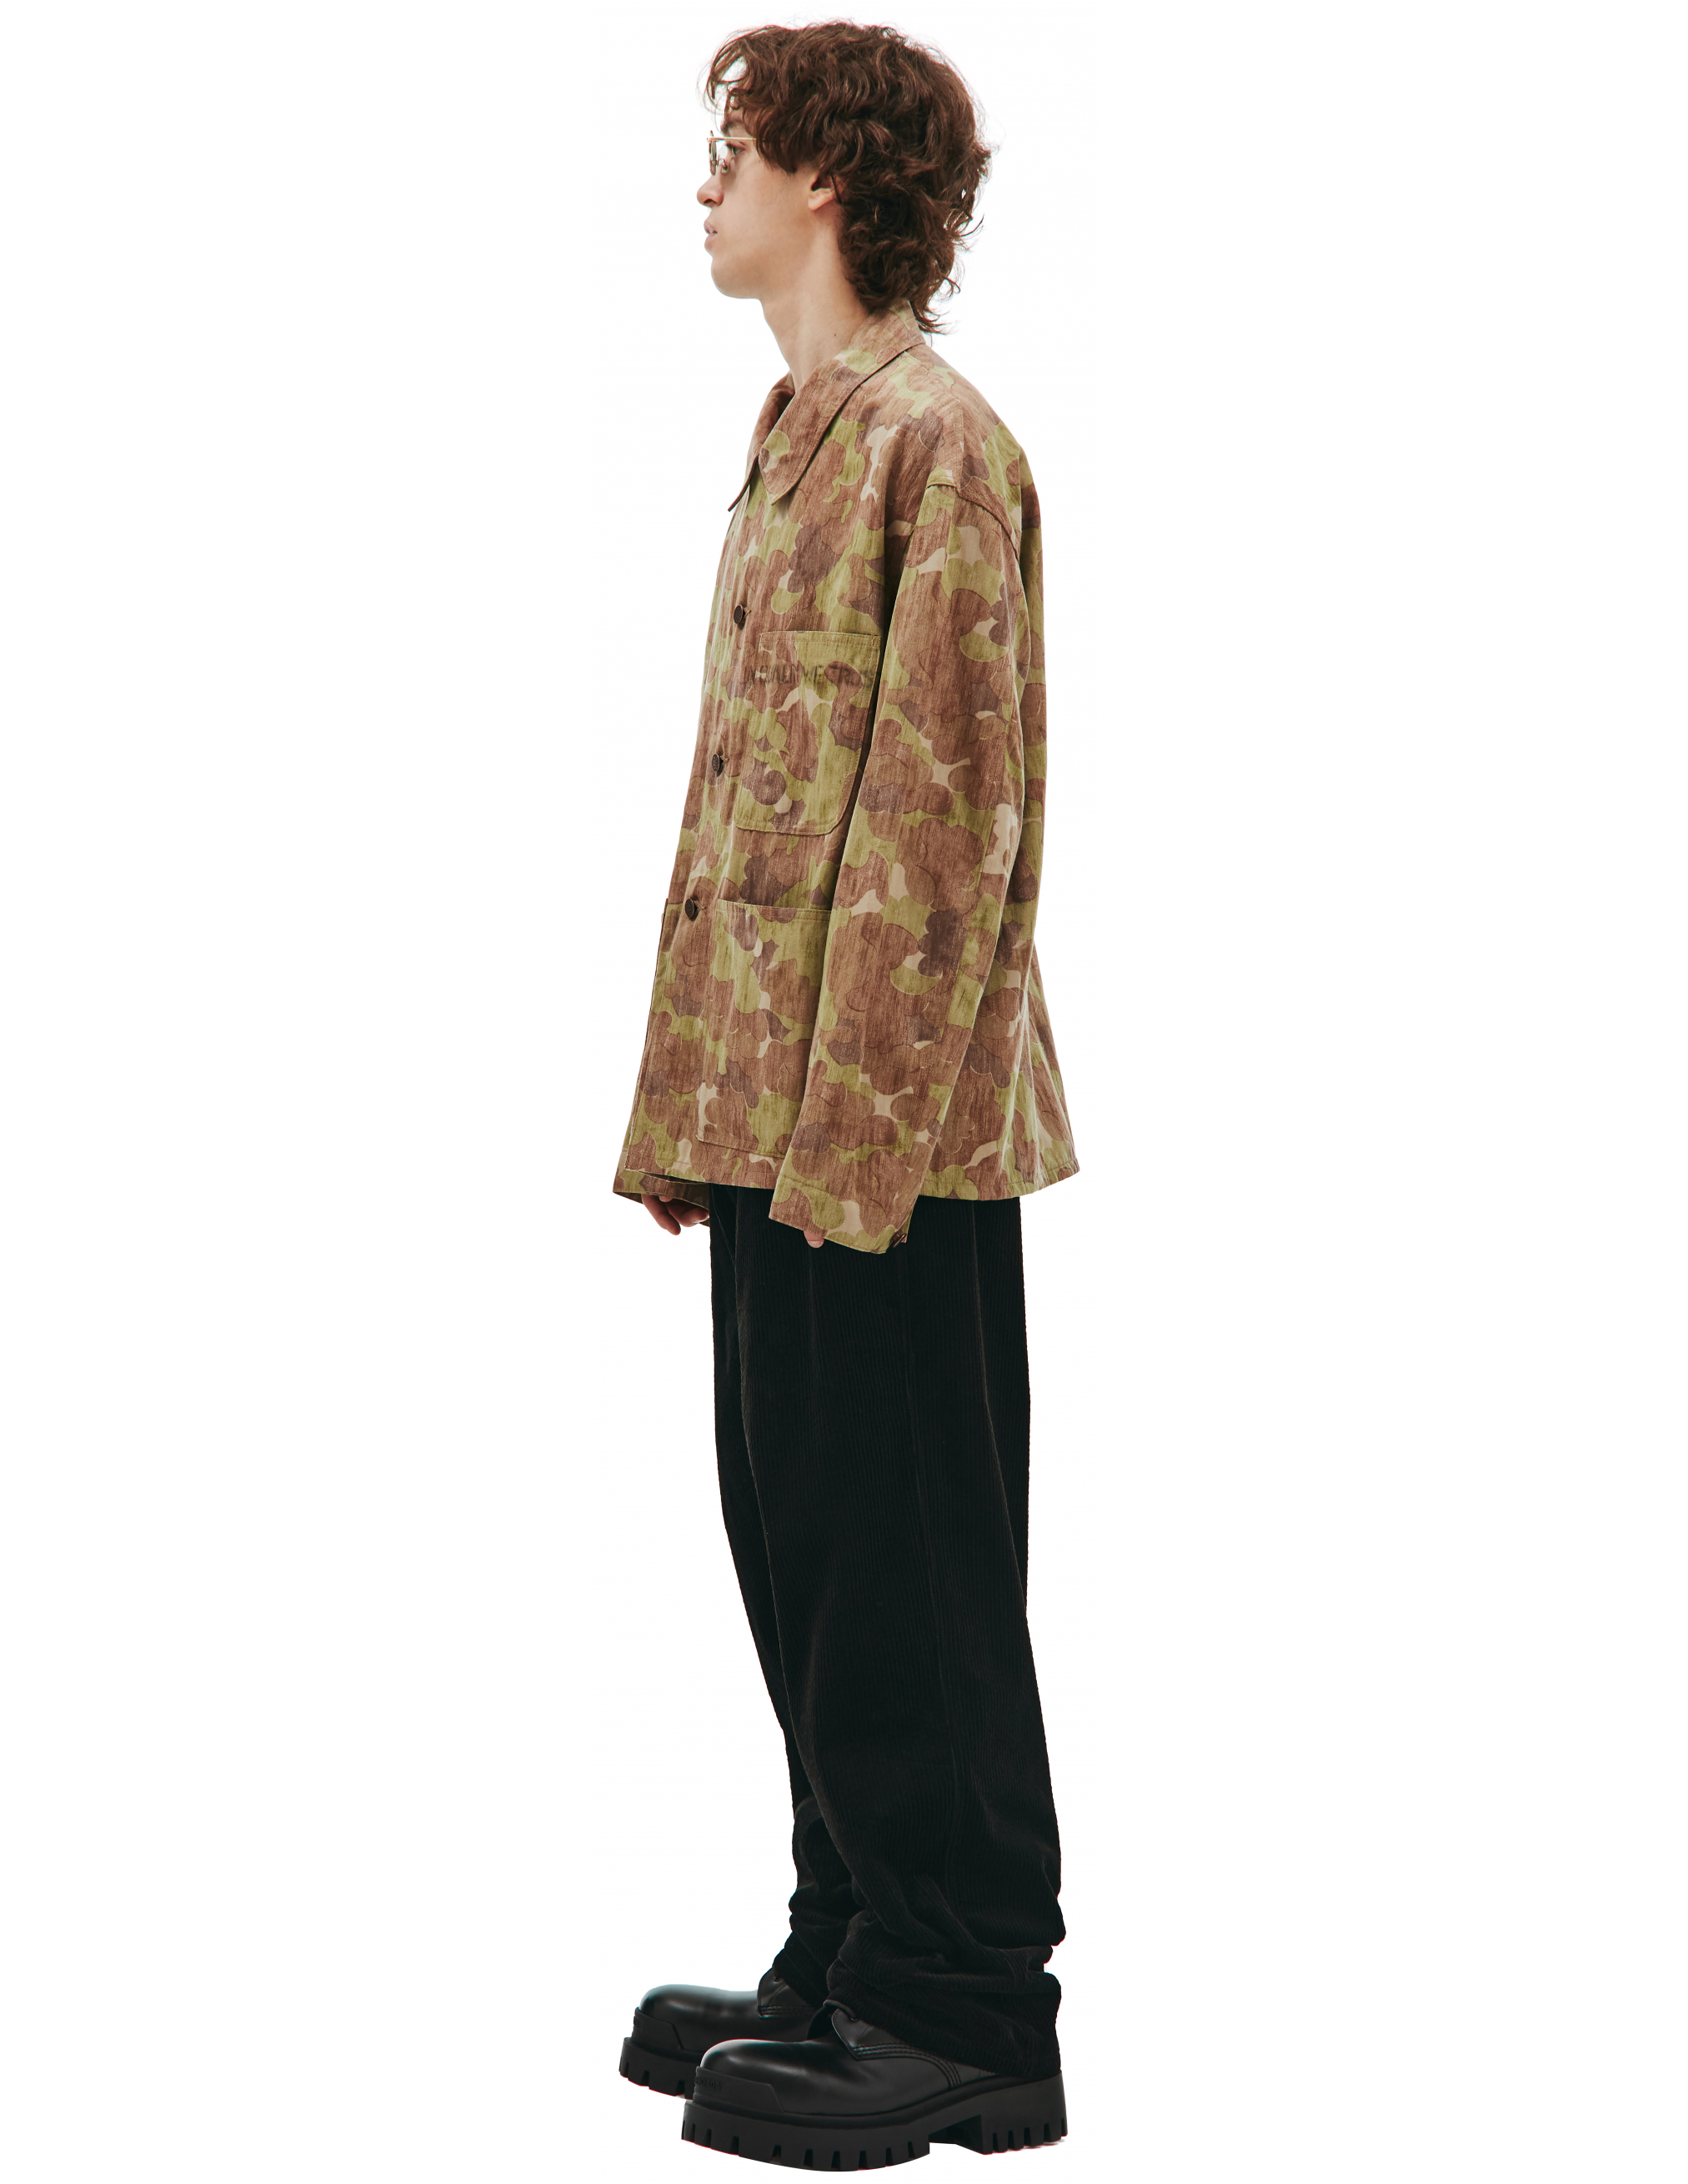 Куртка с камуфляжным принтом Visvim 0121205013018/camo, размер 5;4 0121205013018/camo - фото 2